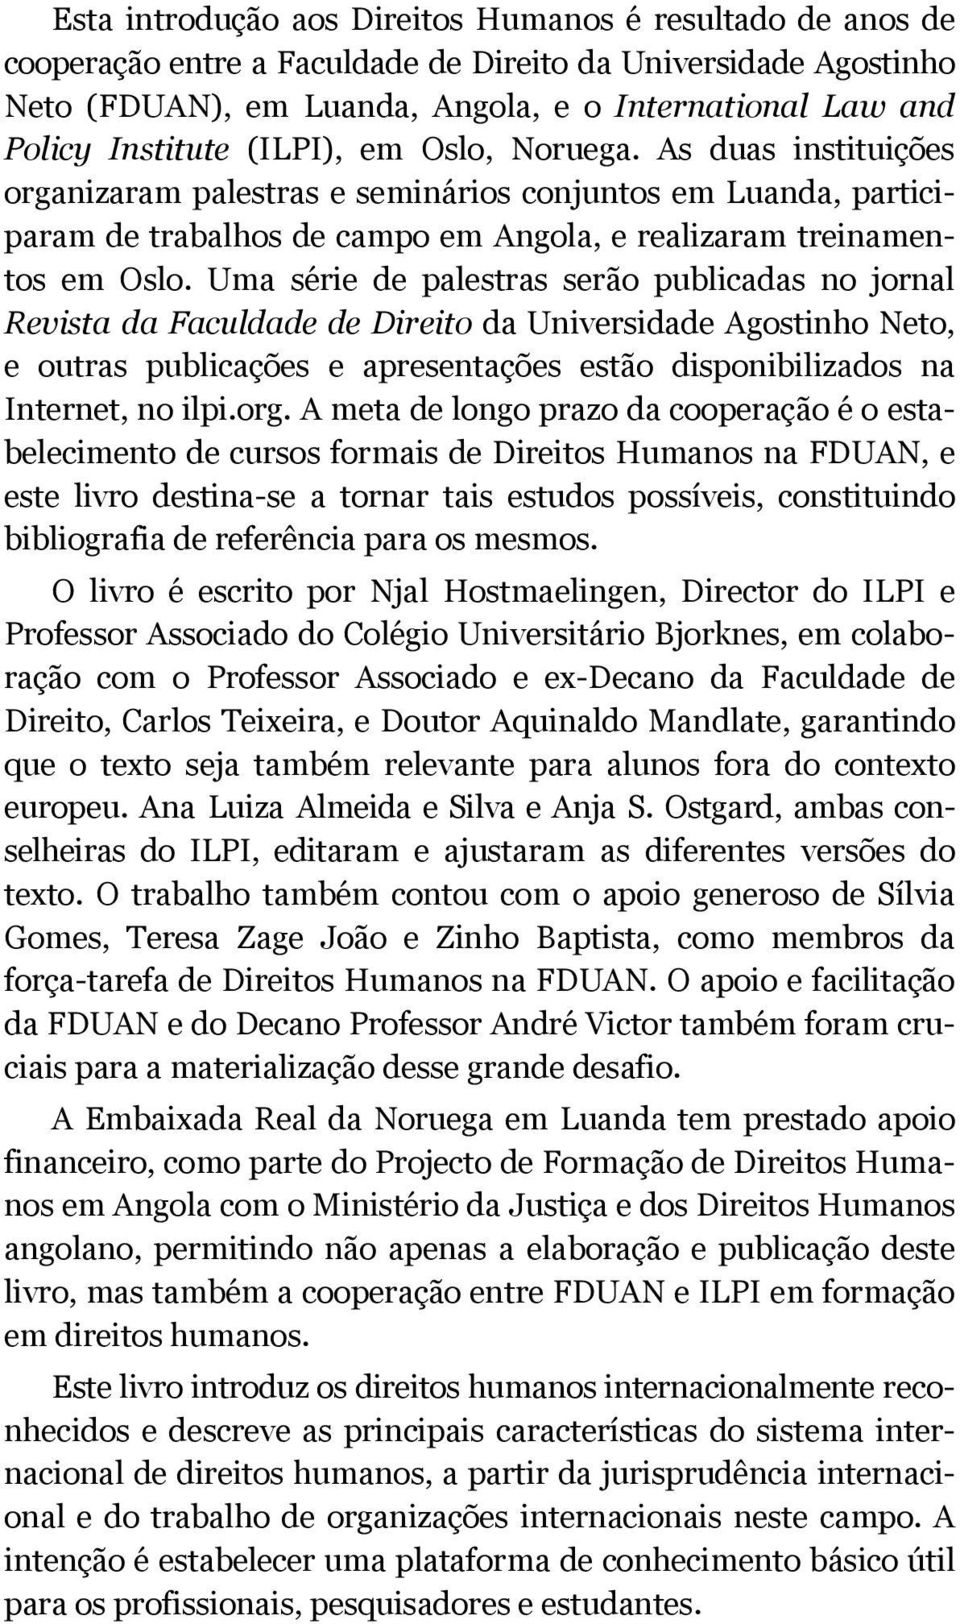 Uma série de palestras serão publicadas no jornal Revista da Faculdade de Direito da Universidade Agostinho Neto, e outras publicações e apresentações estão disponibilizados na Internet, no ilpi.org.